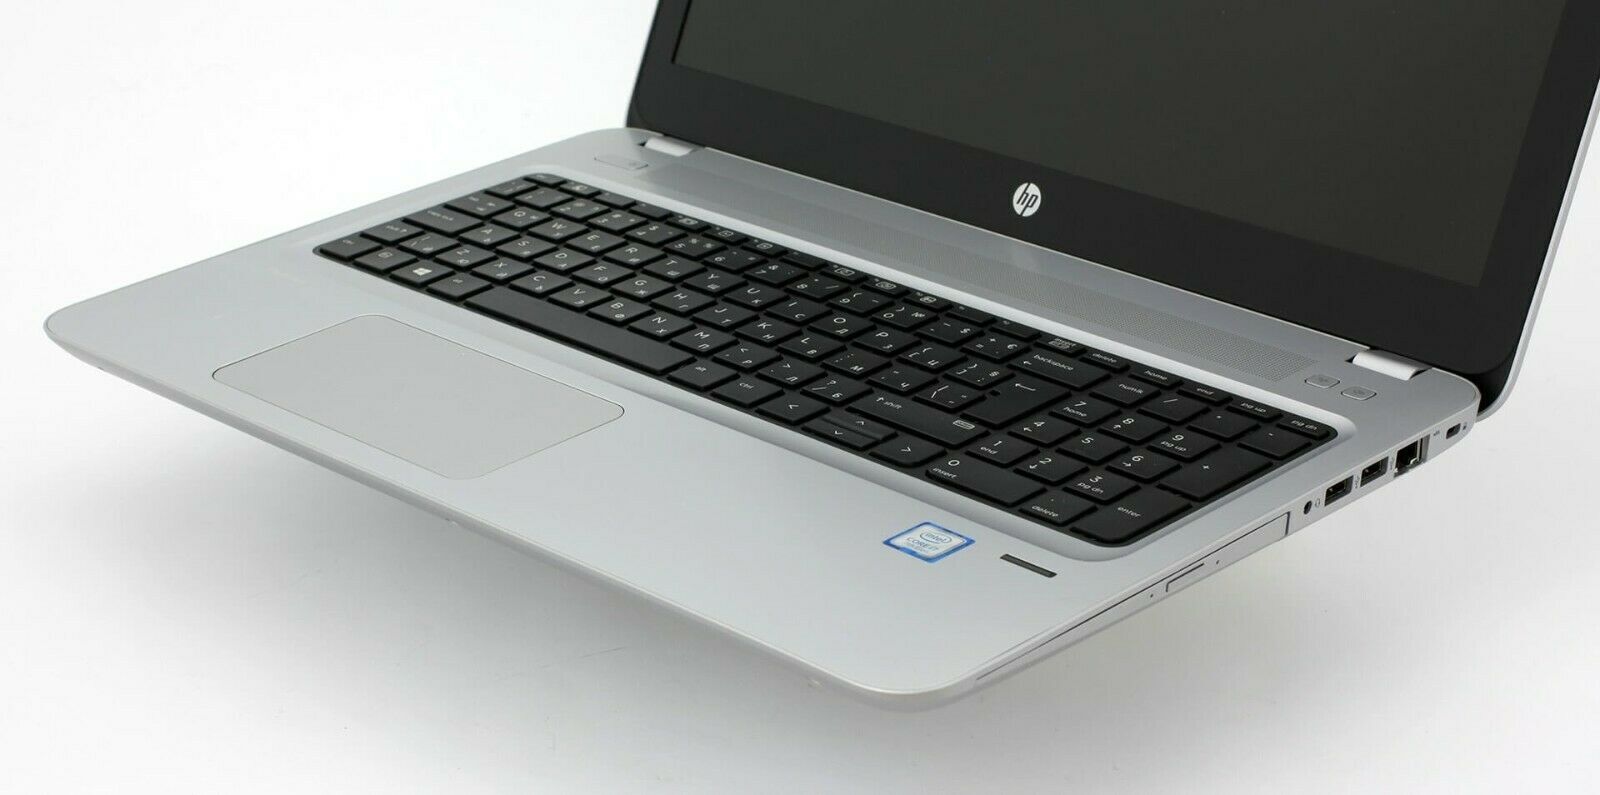 HP ProBook 650 G2 Intel i7 6600U 2.40GHz 16GB RAM 512GB SSD 15.6" Win 10 - B Grade Image 2